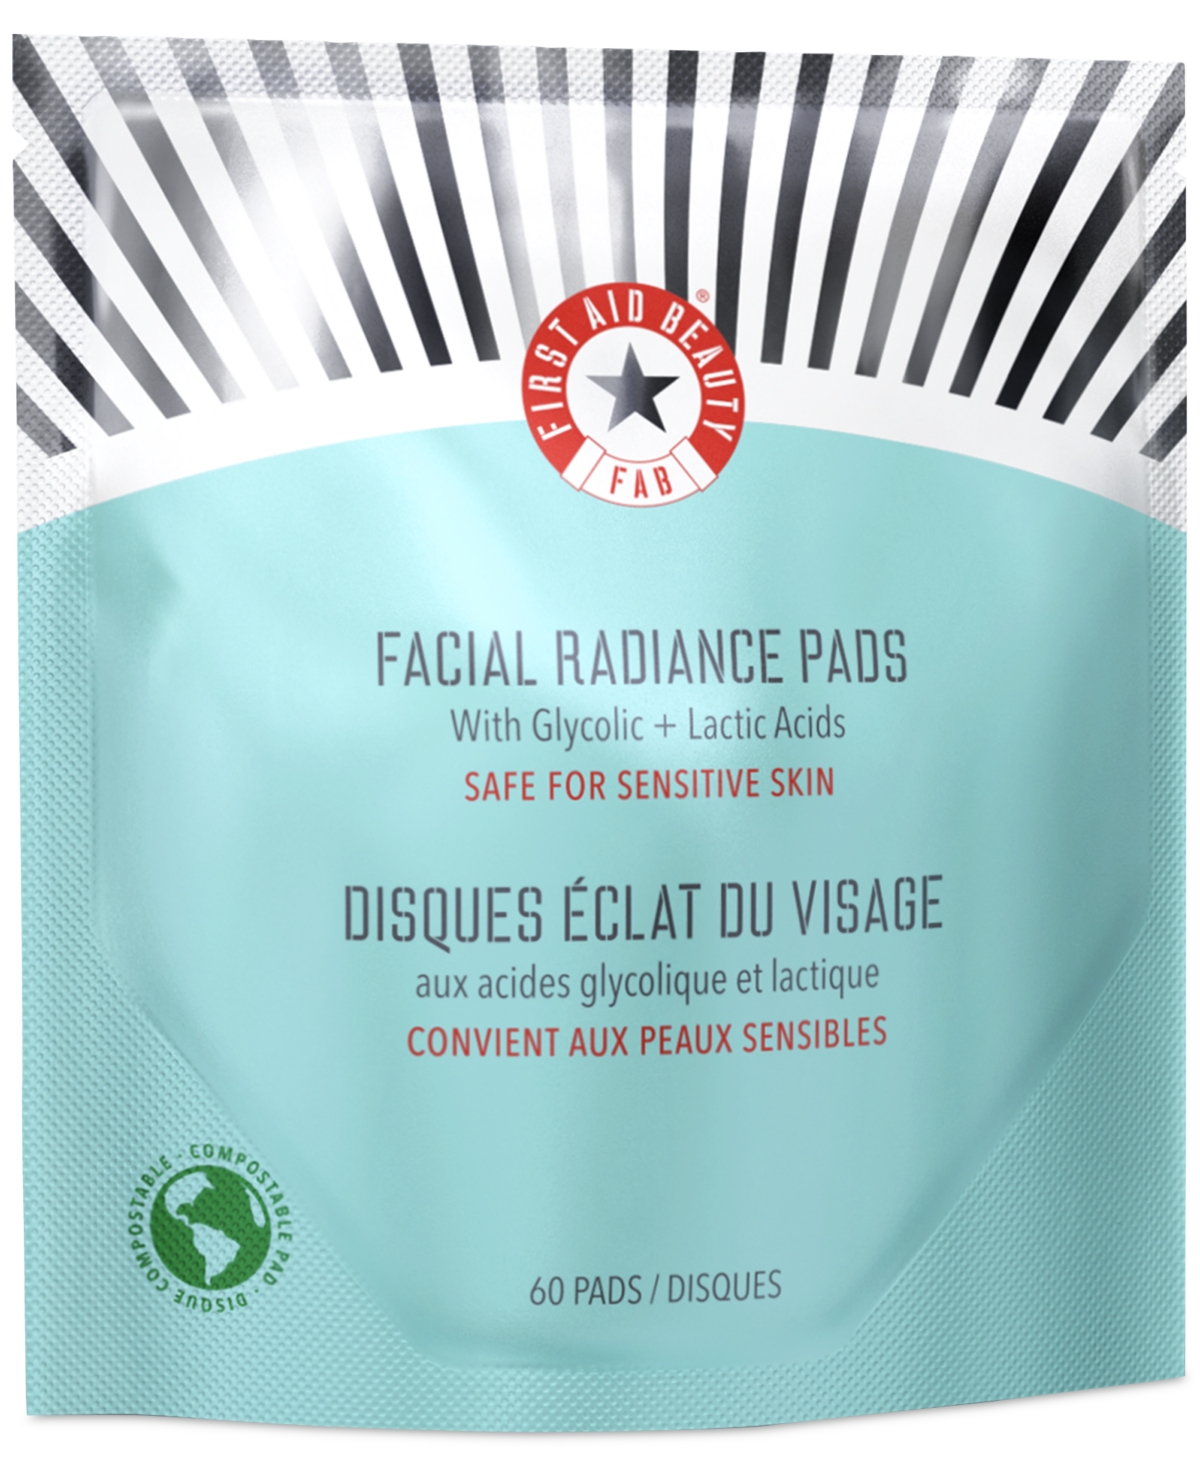 Facial Radiance Pads, 60 pads